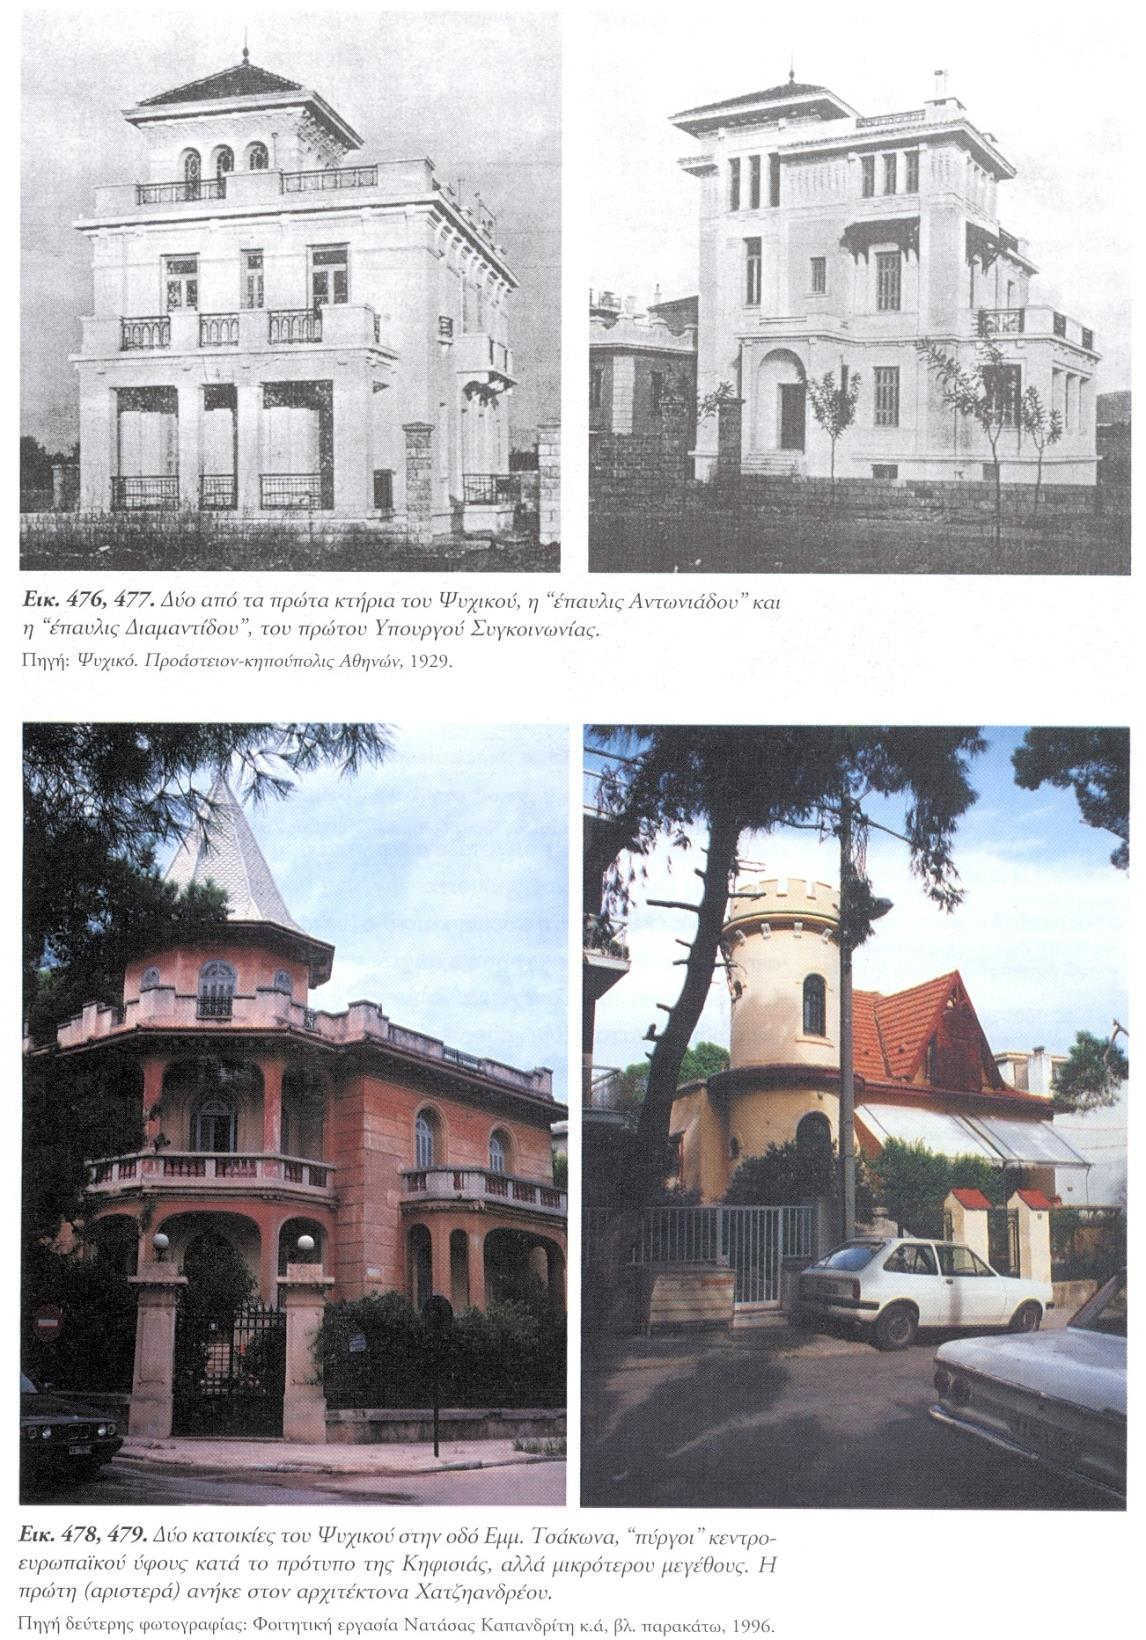 Παραδείγματα σχεδιασμού στην Ελλάδα ως τη δεκαετία του 1930.